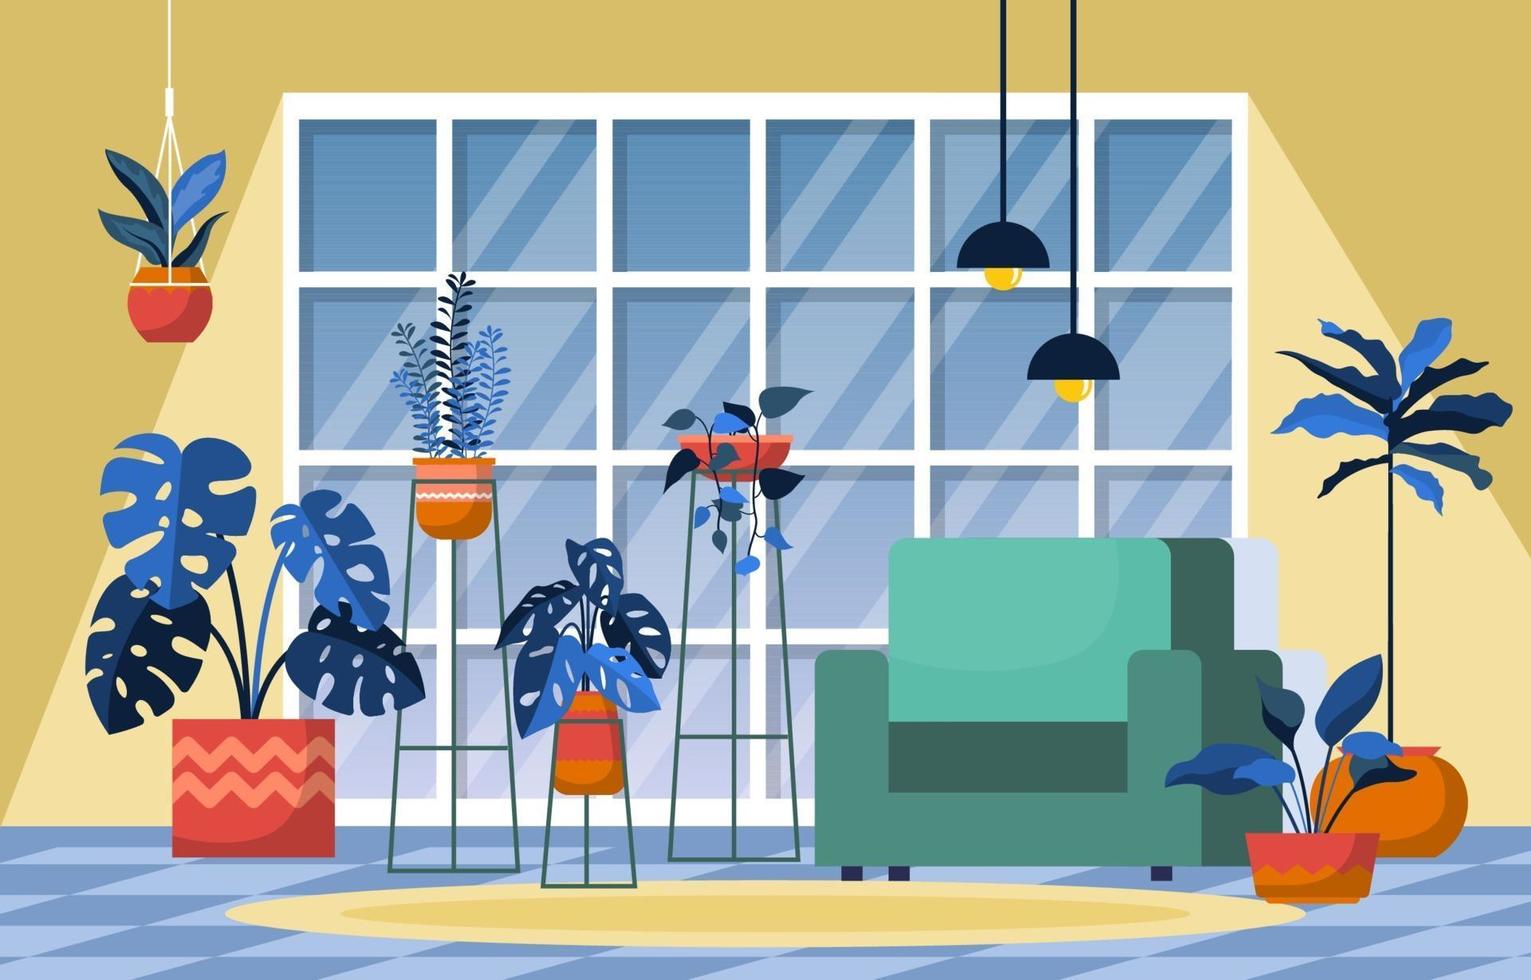 planta de casa tropical planta decorativa verde na ilustração da sala de estar vetor